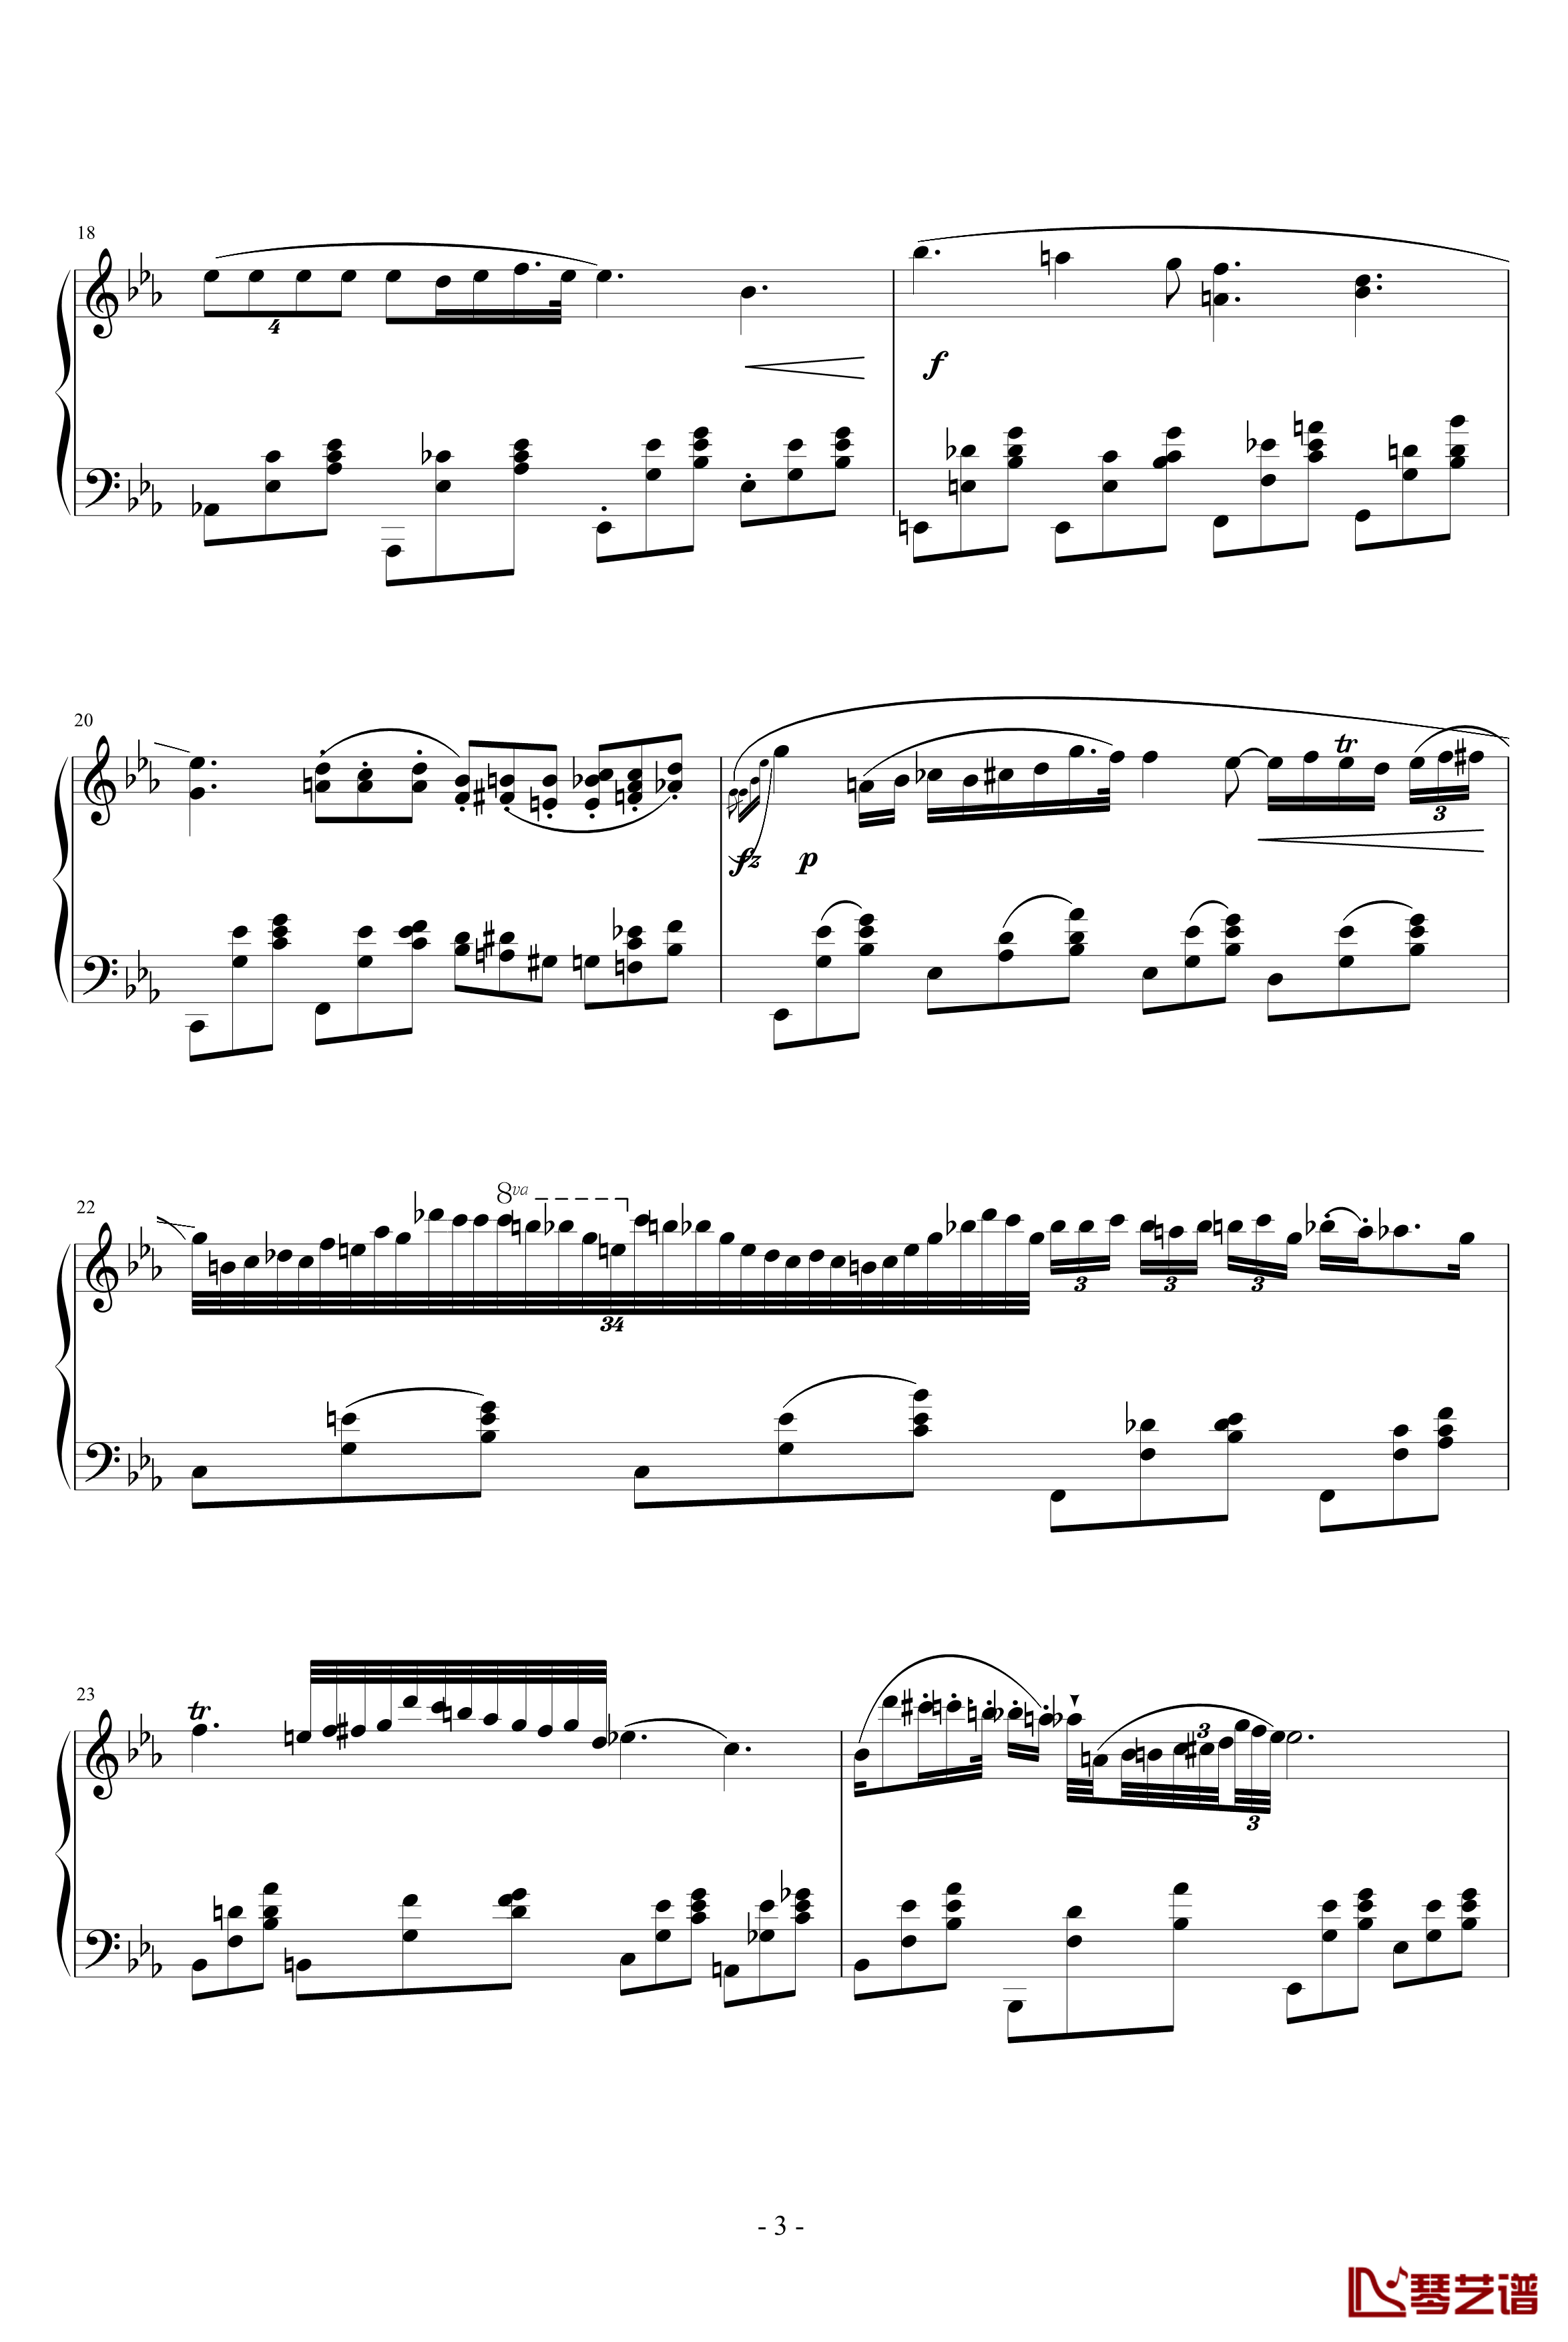 降E大调夜曲钢琴谱-另一个版本-肖邦-chopin3